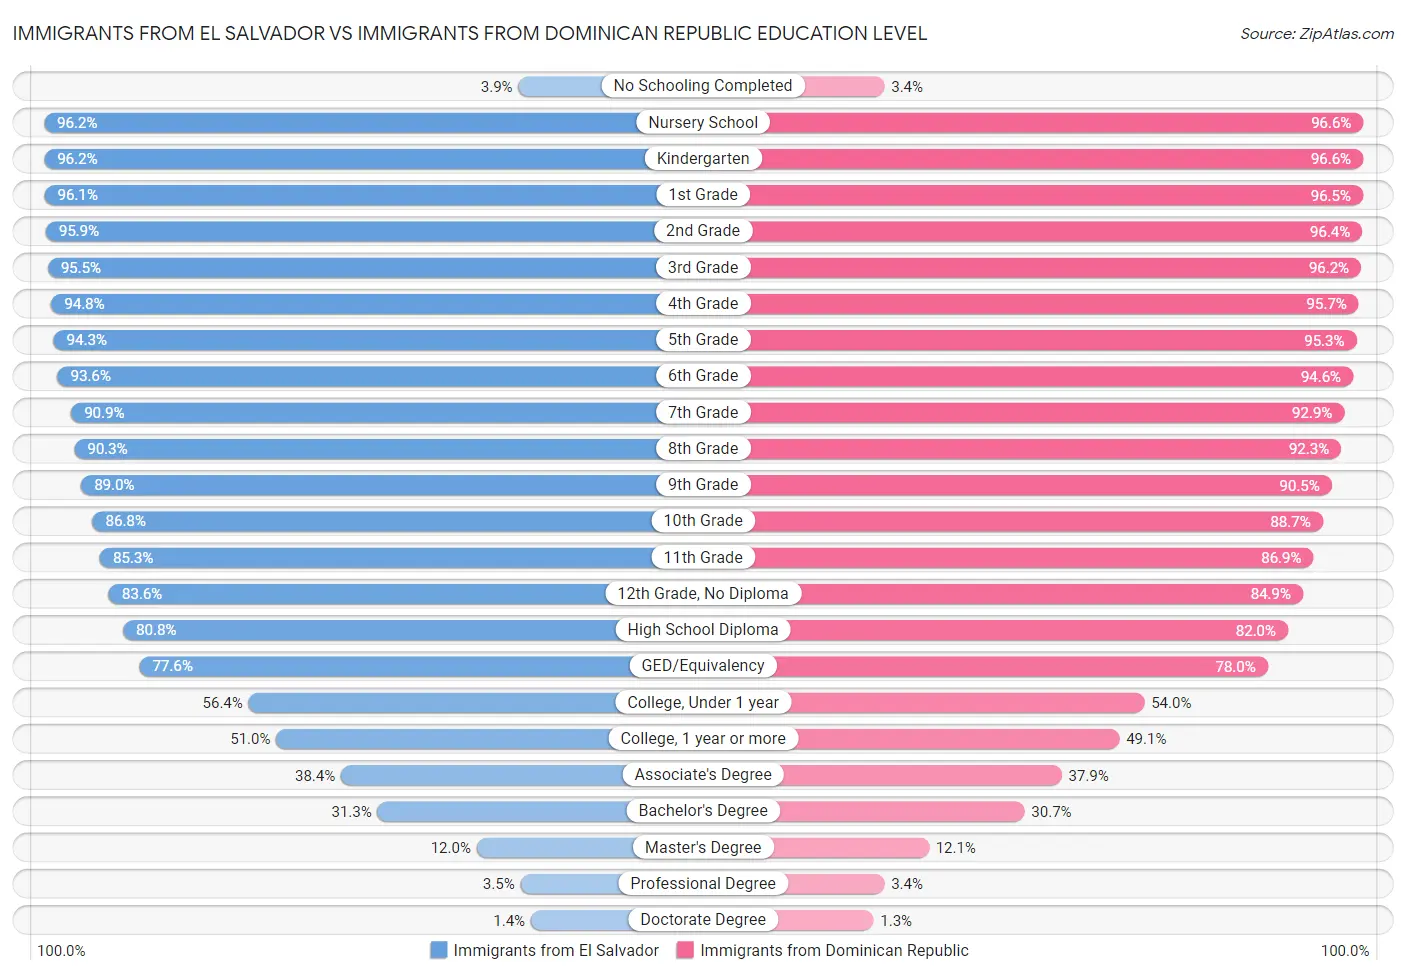 Immigrants from El Salvador vs Immigrants from Dominican Republic Education Level